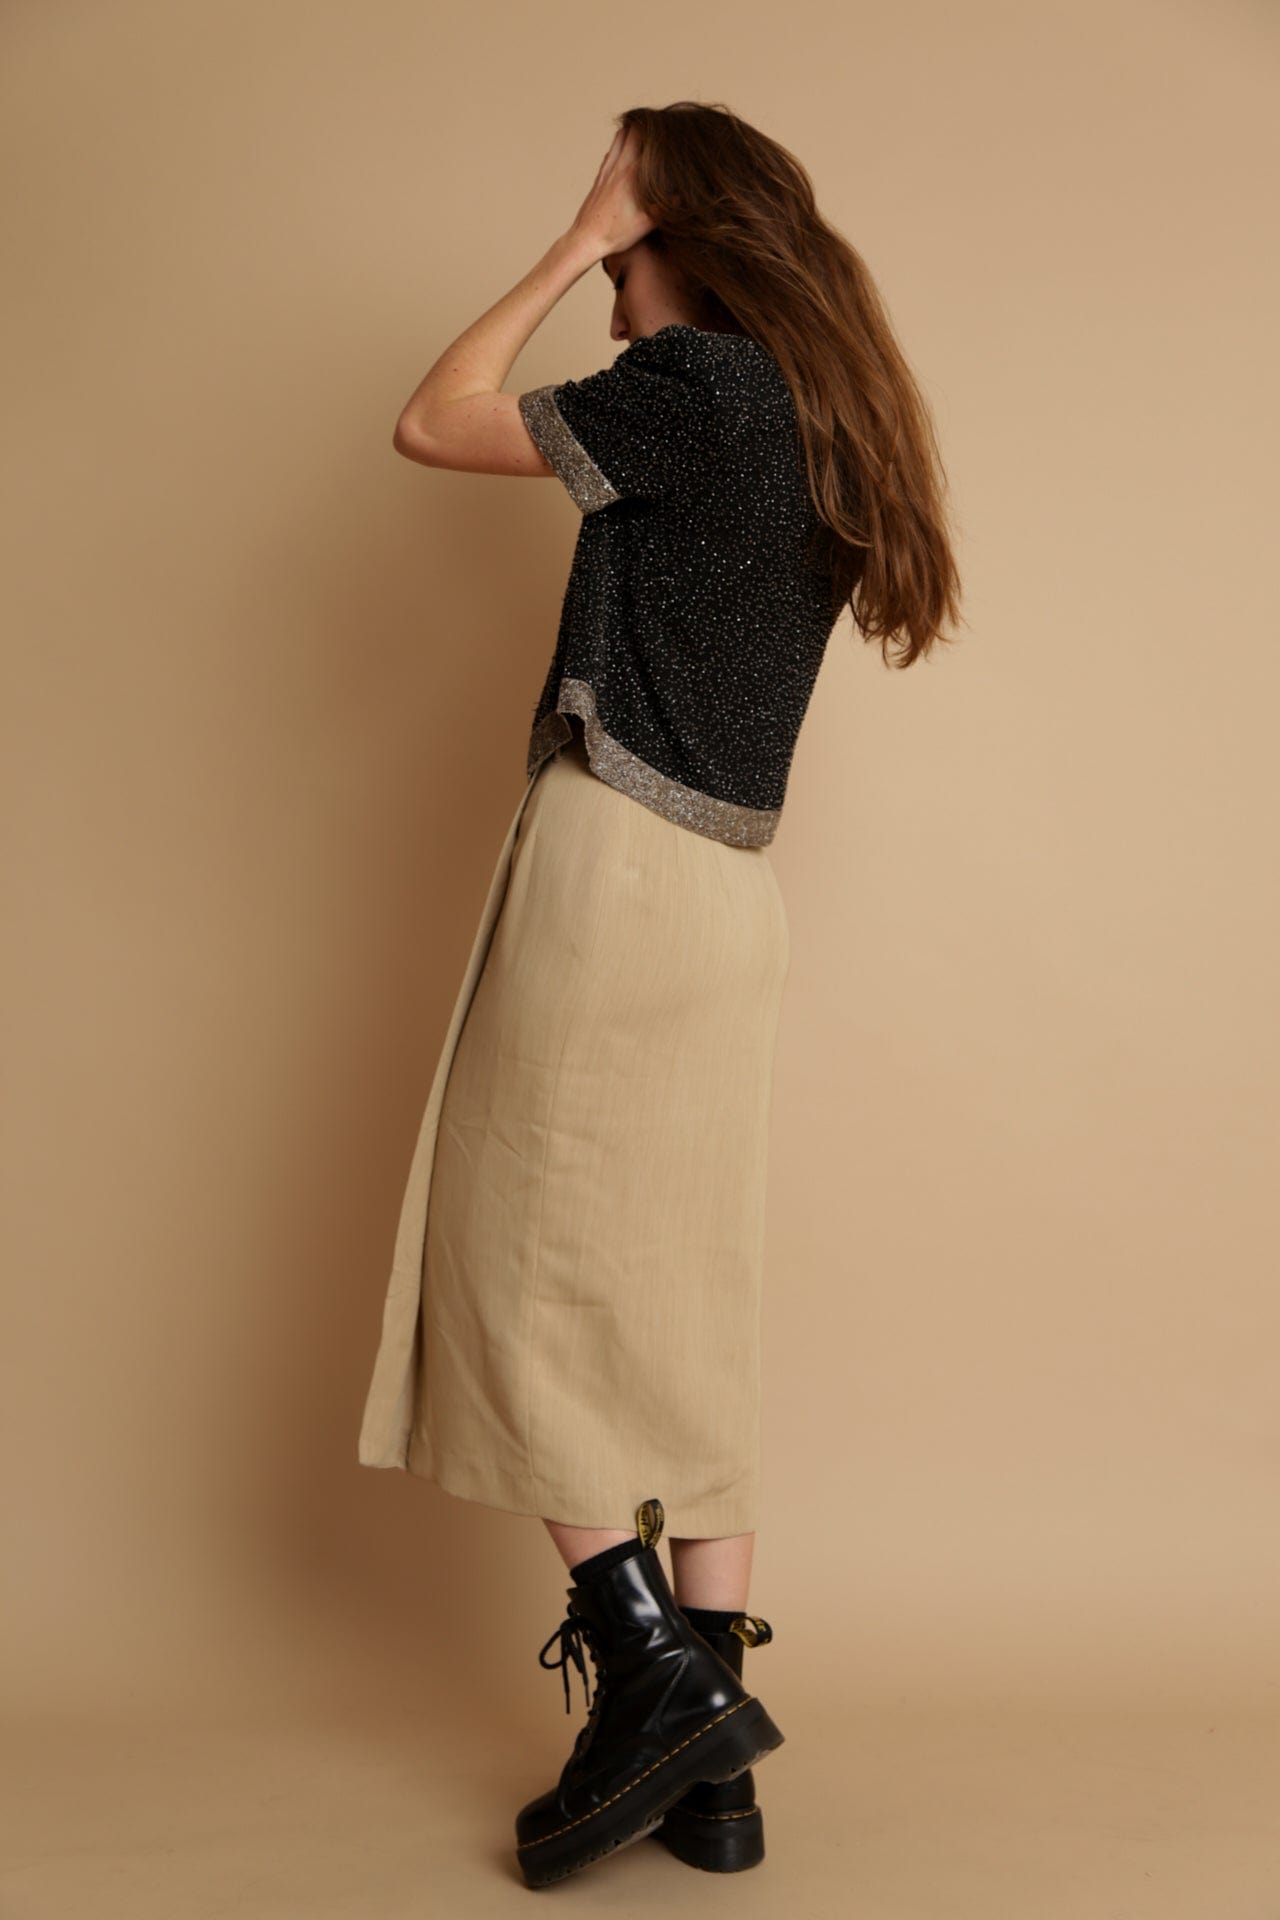 SISTERGOLDEN Skirt Wheatley Vintage Skirt